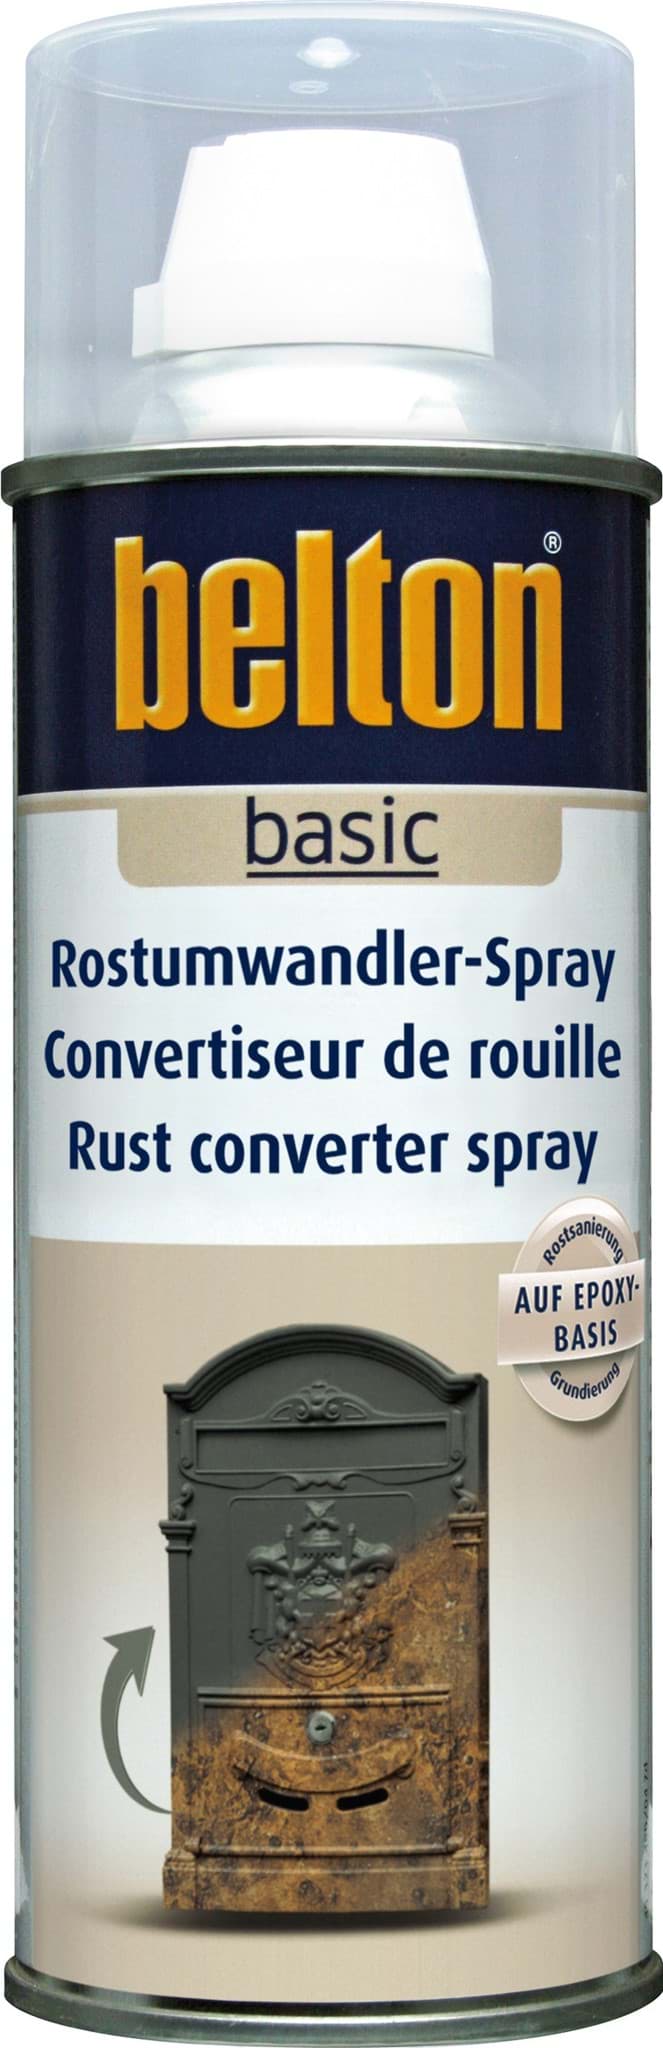 Изображение Belton basic Rostumwandler - Spray